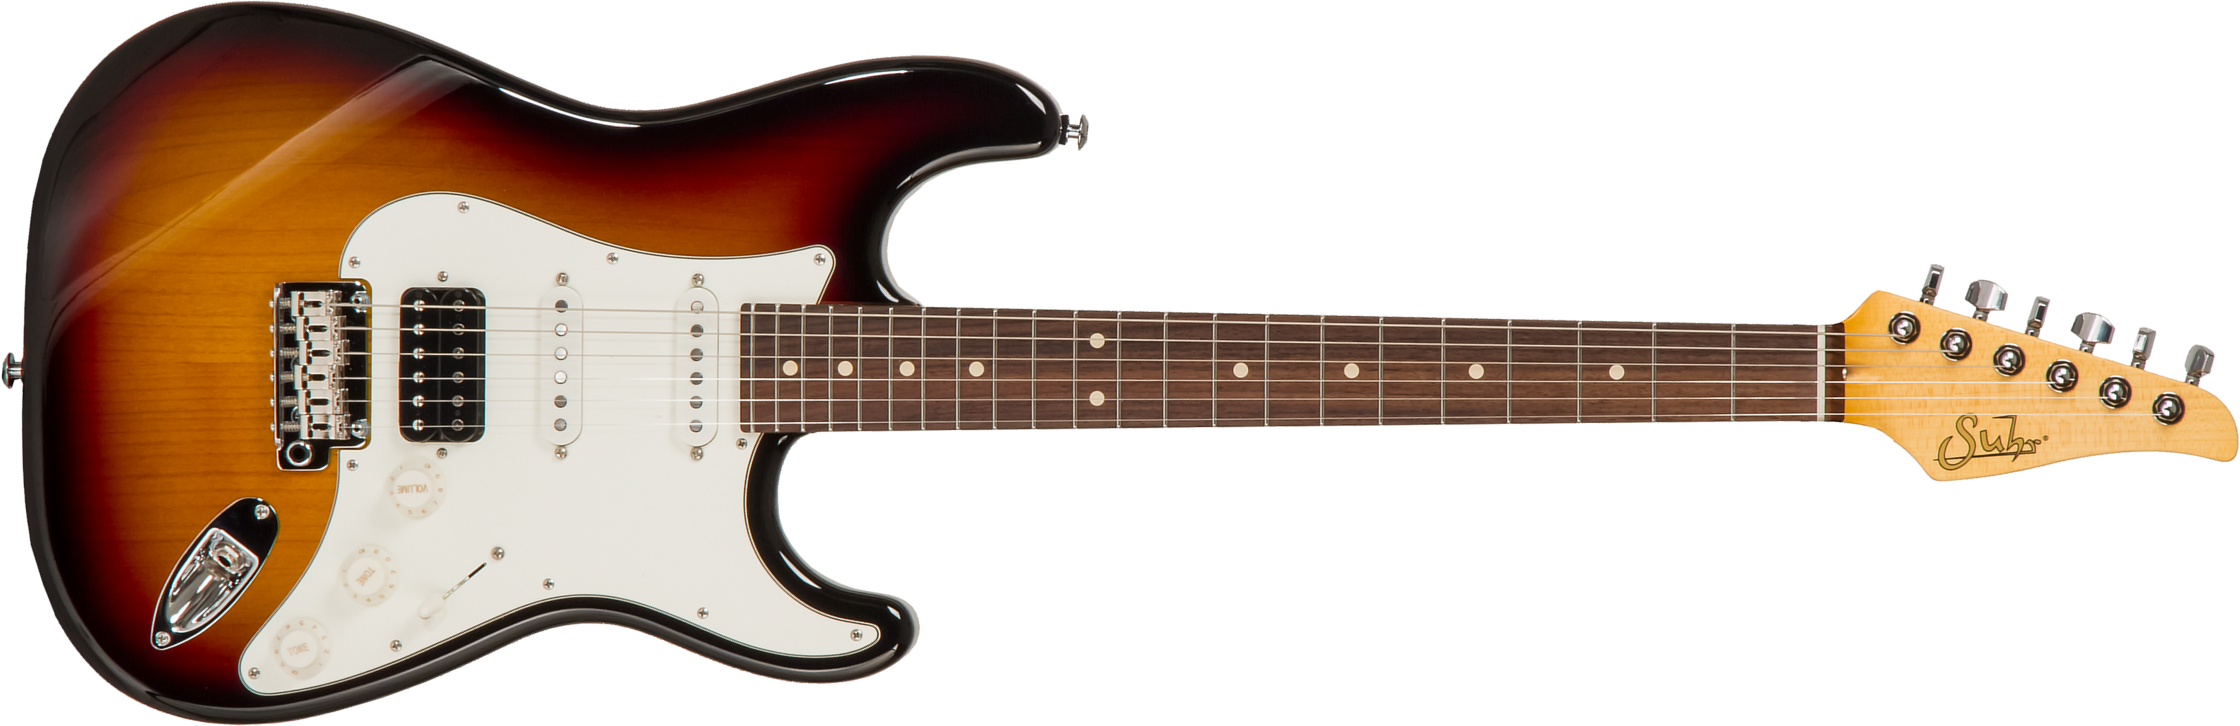 Suhr Classic S 01-cls-0001 Hss Trem Rw #70248 - 3 Tone Burst - Guitare Électrique Forme Str - Main picture